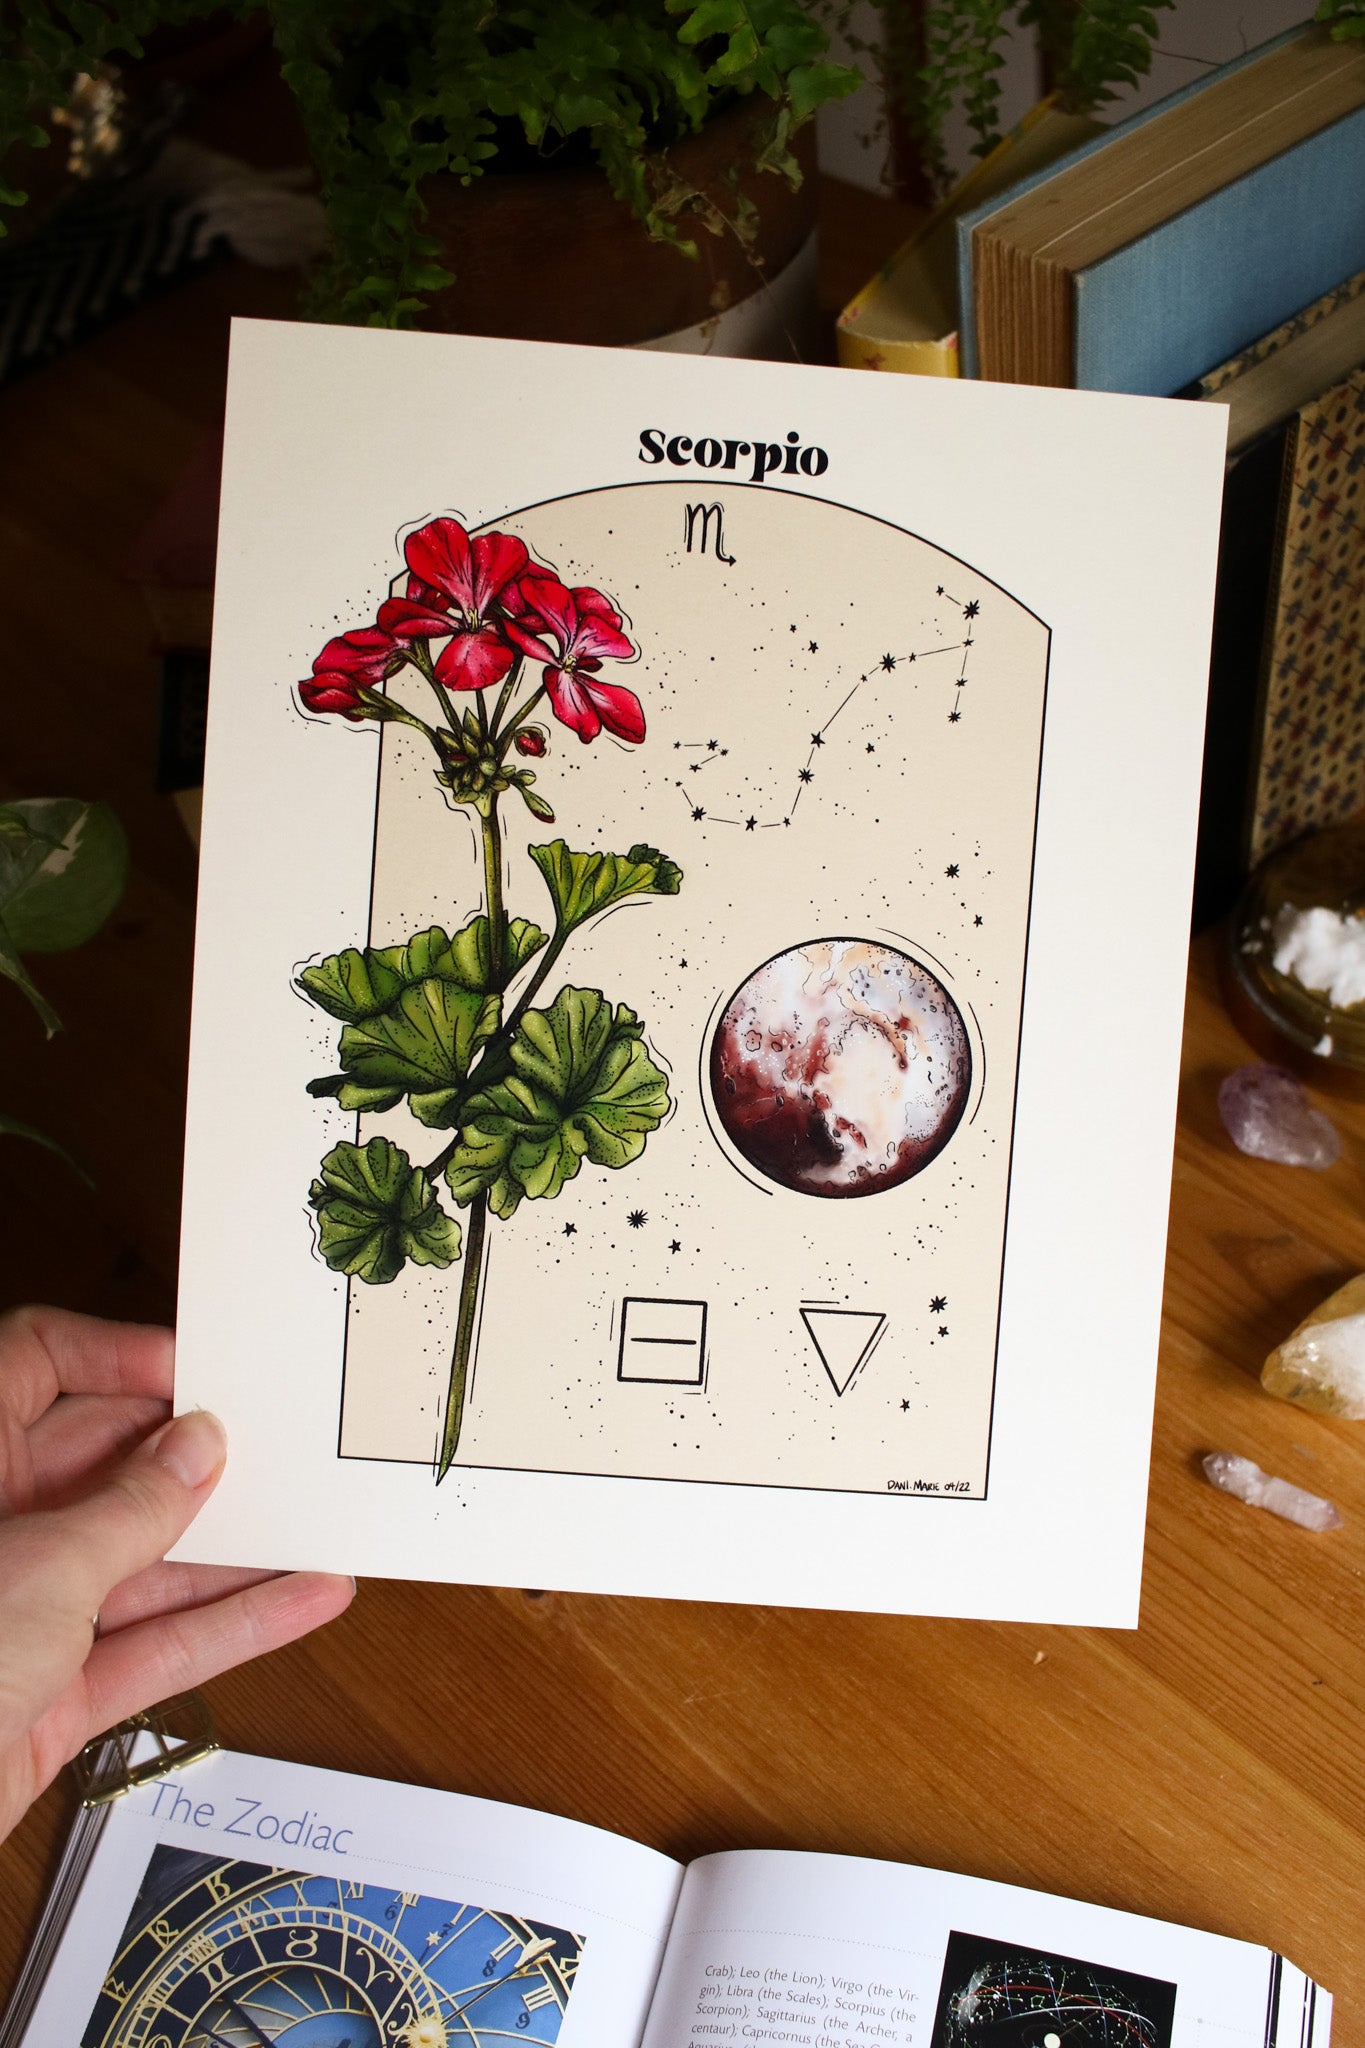 Scorpio - Astrology Infographic